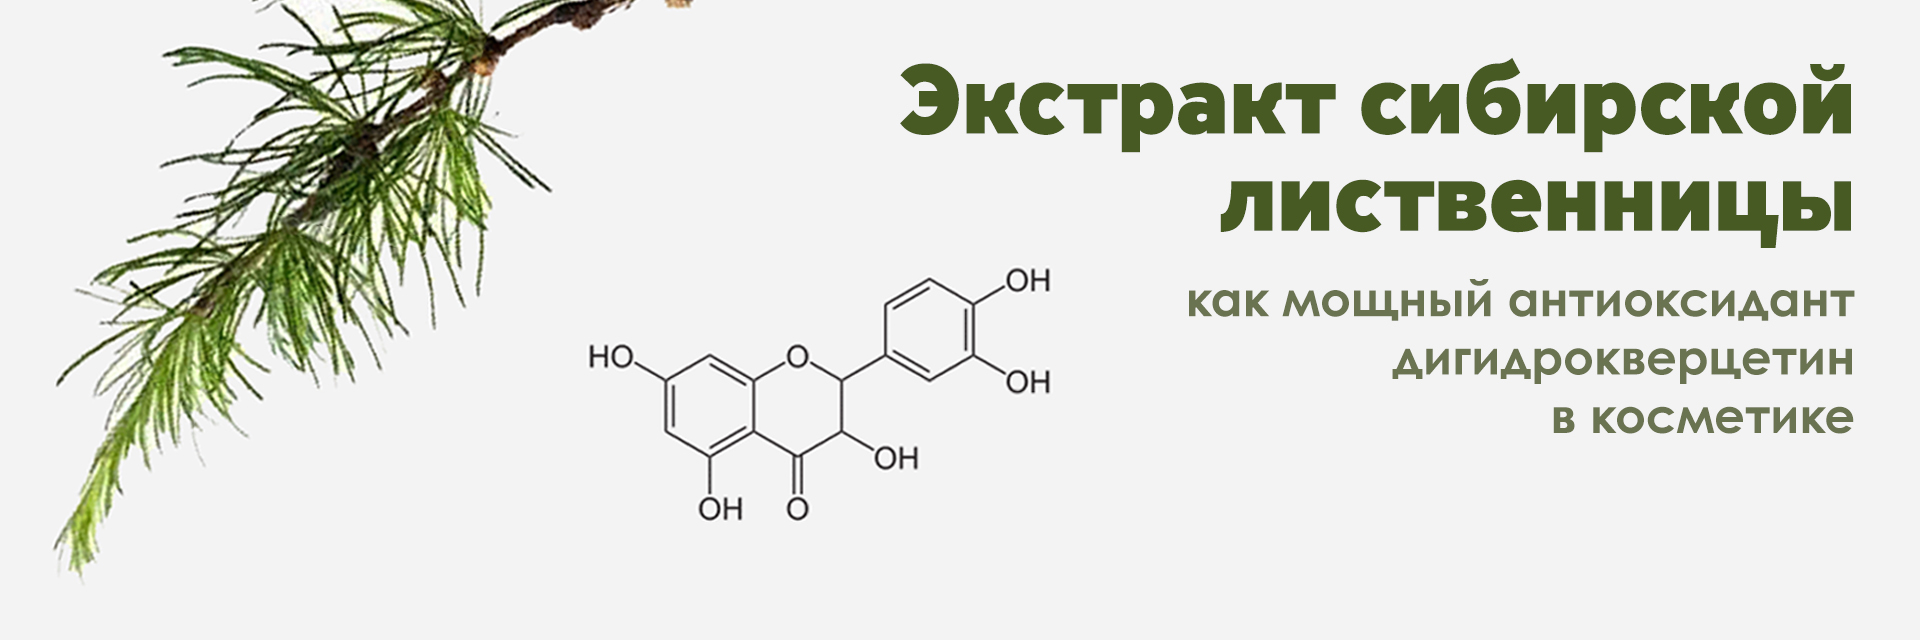 Дигидрокверцетин из сибирской лиственницы